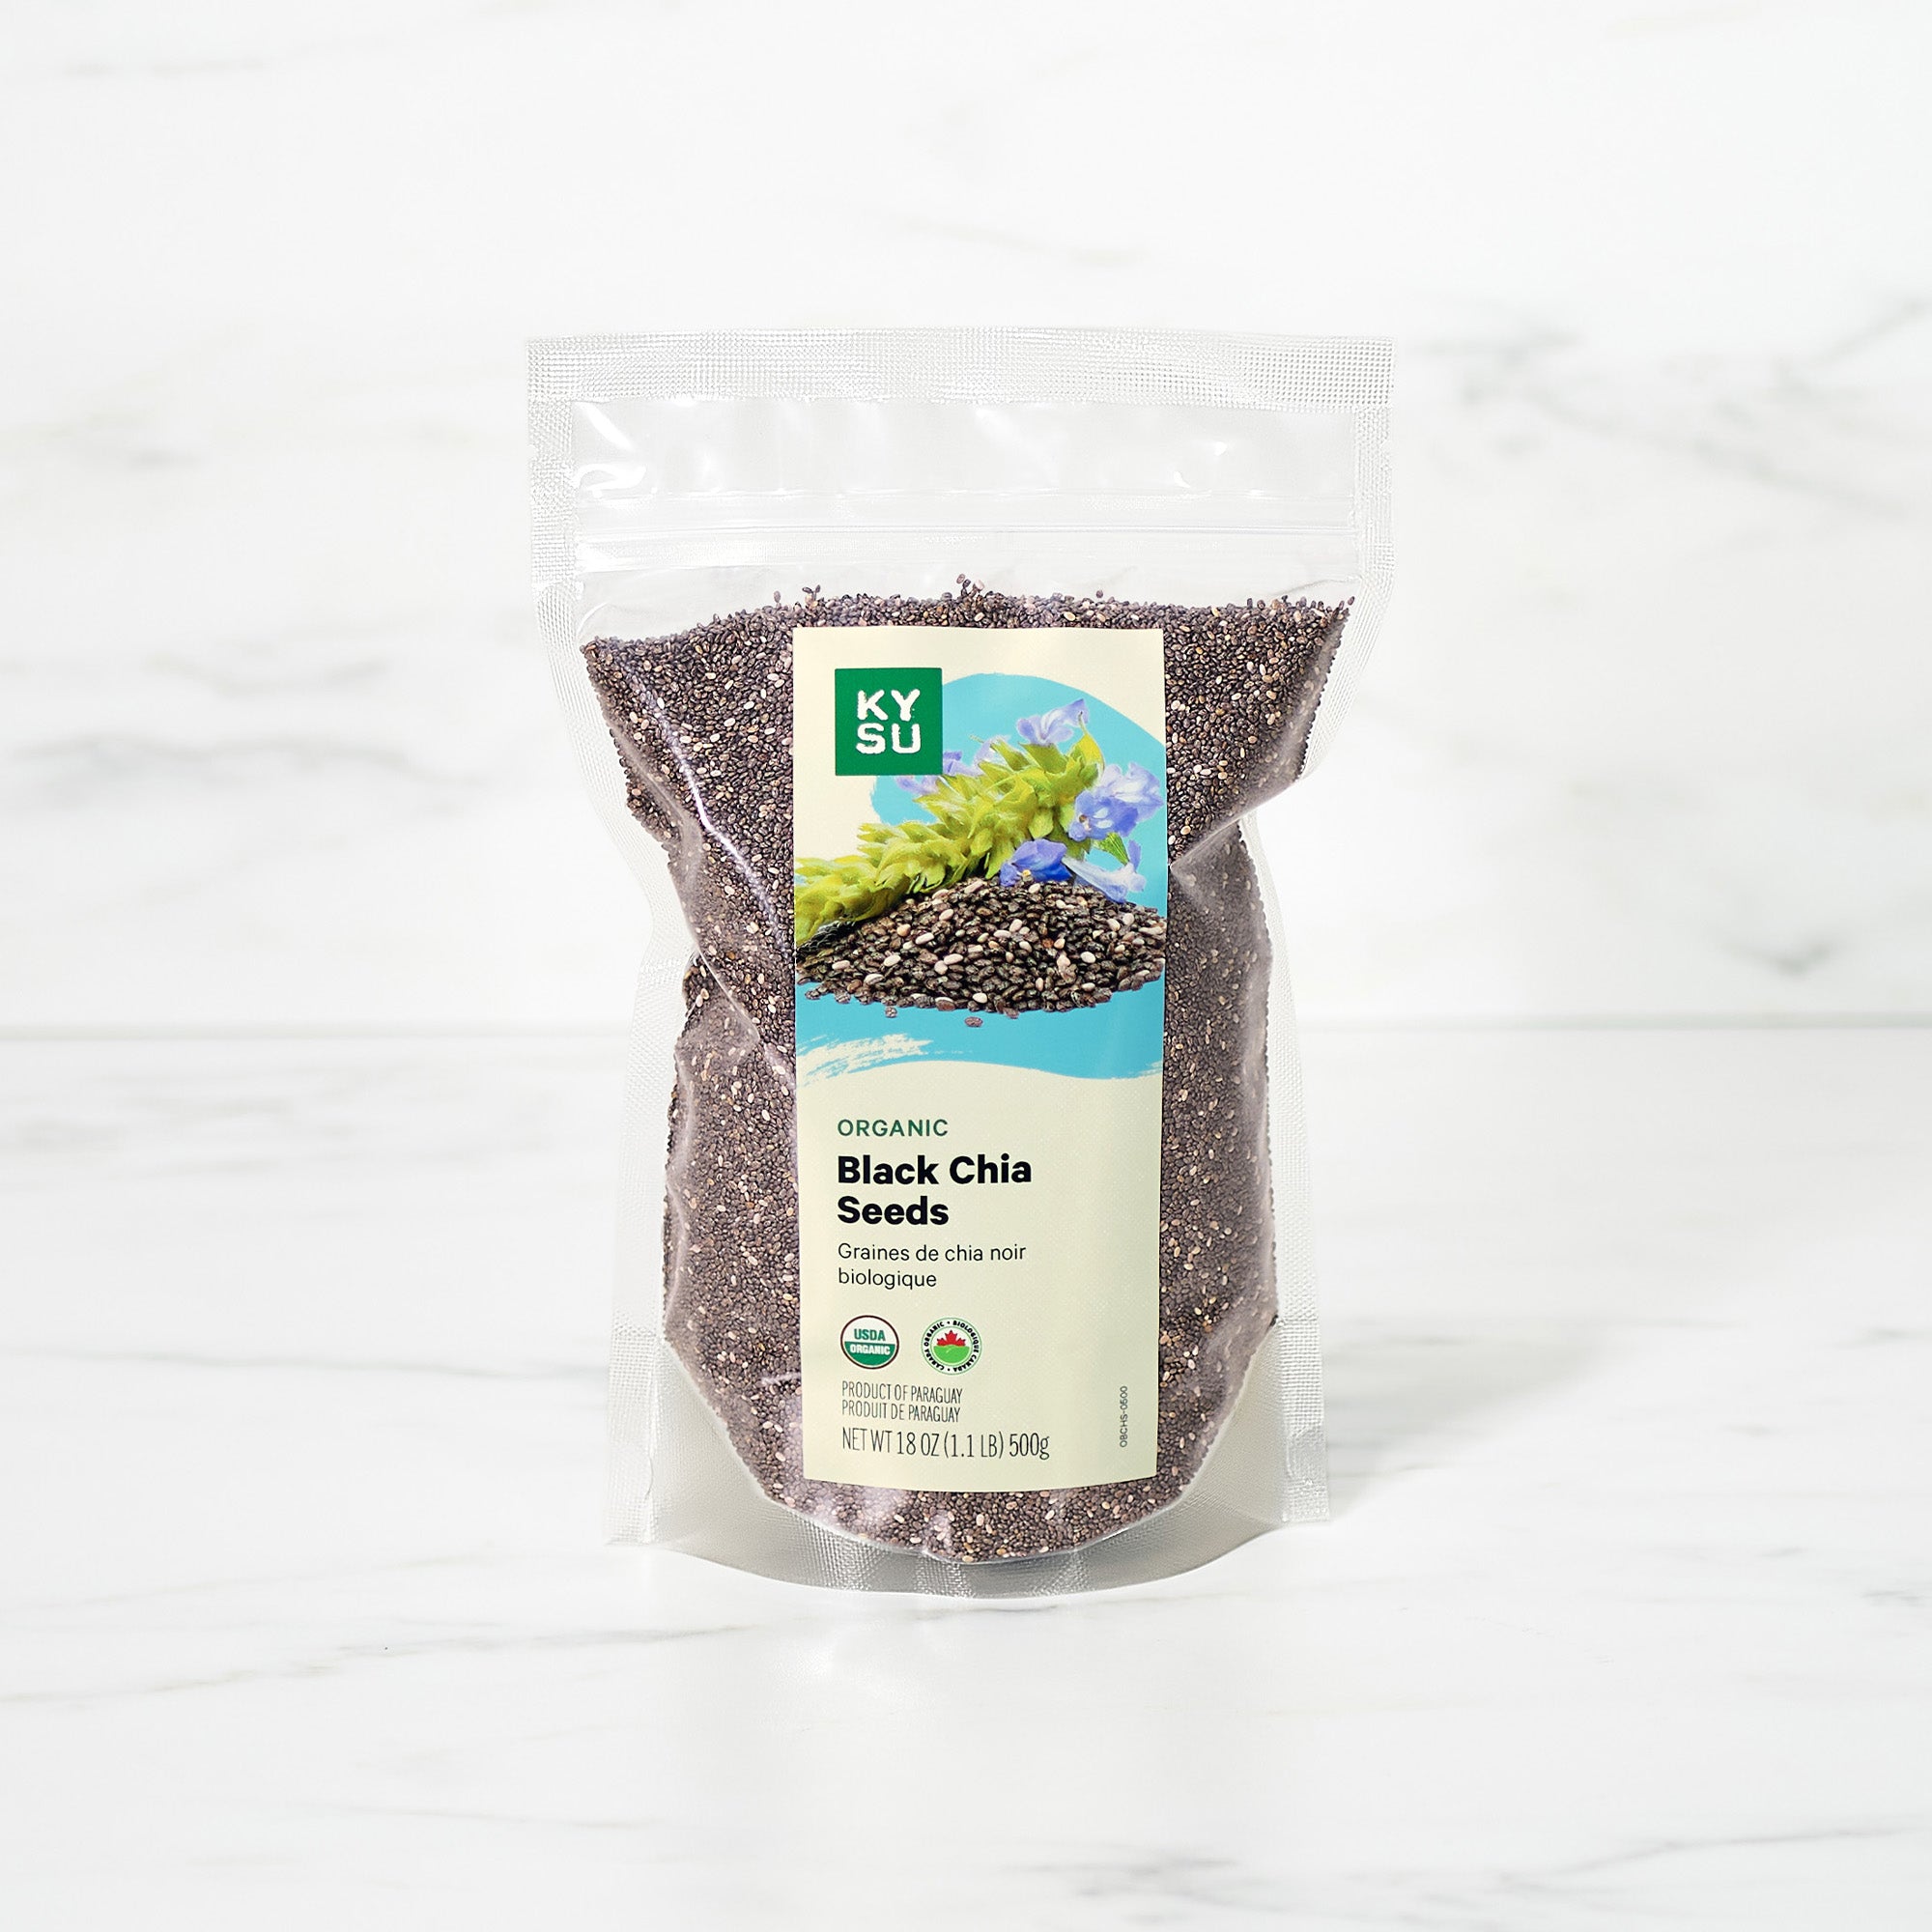 Organic black chia seeds, 1.1 lb